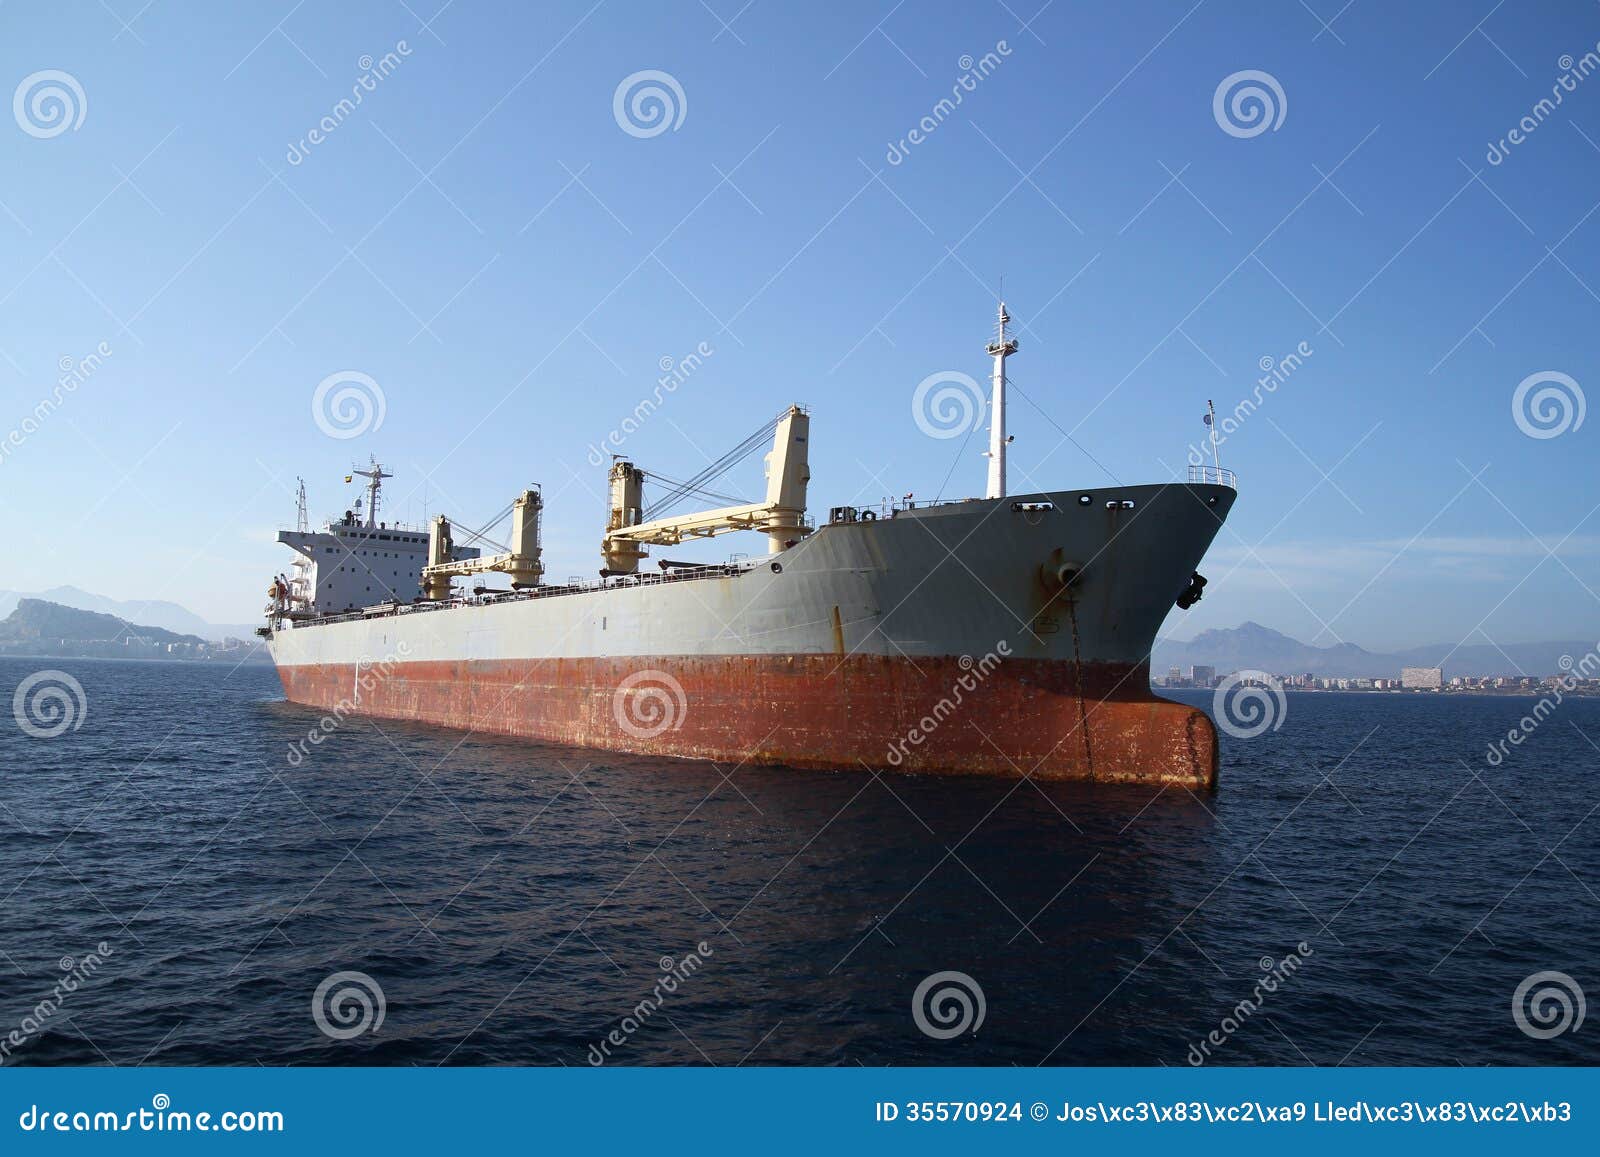 general cargo vessel: forward zon